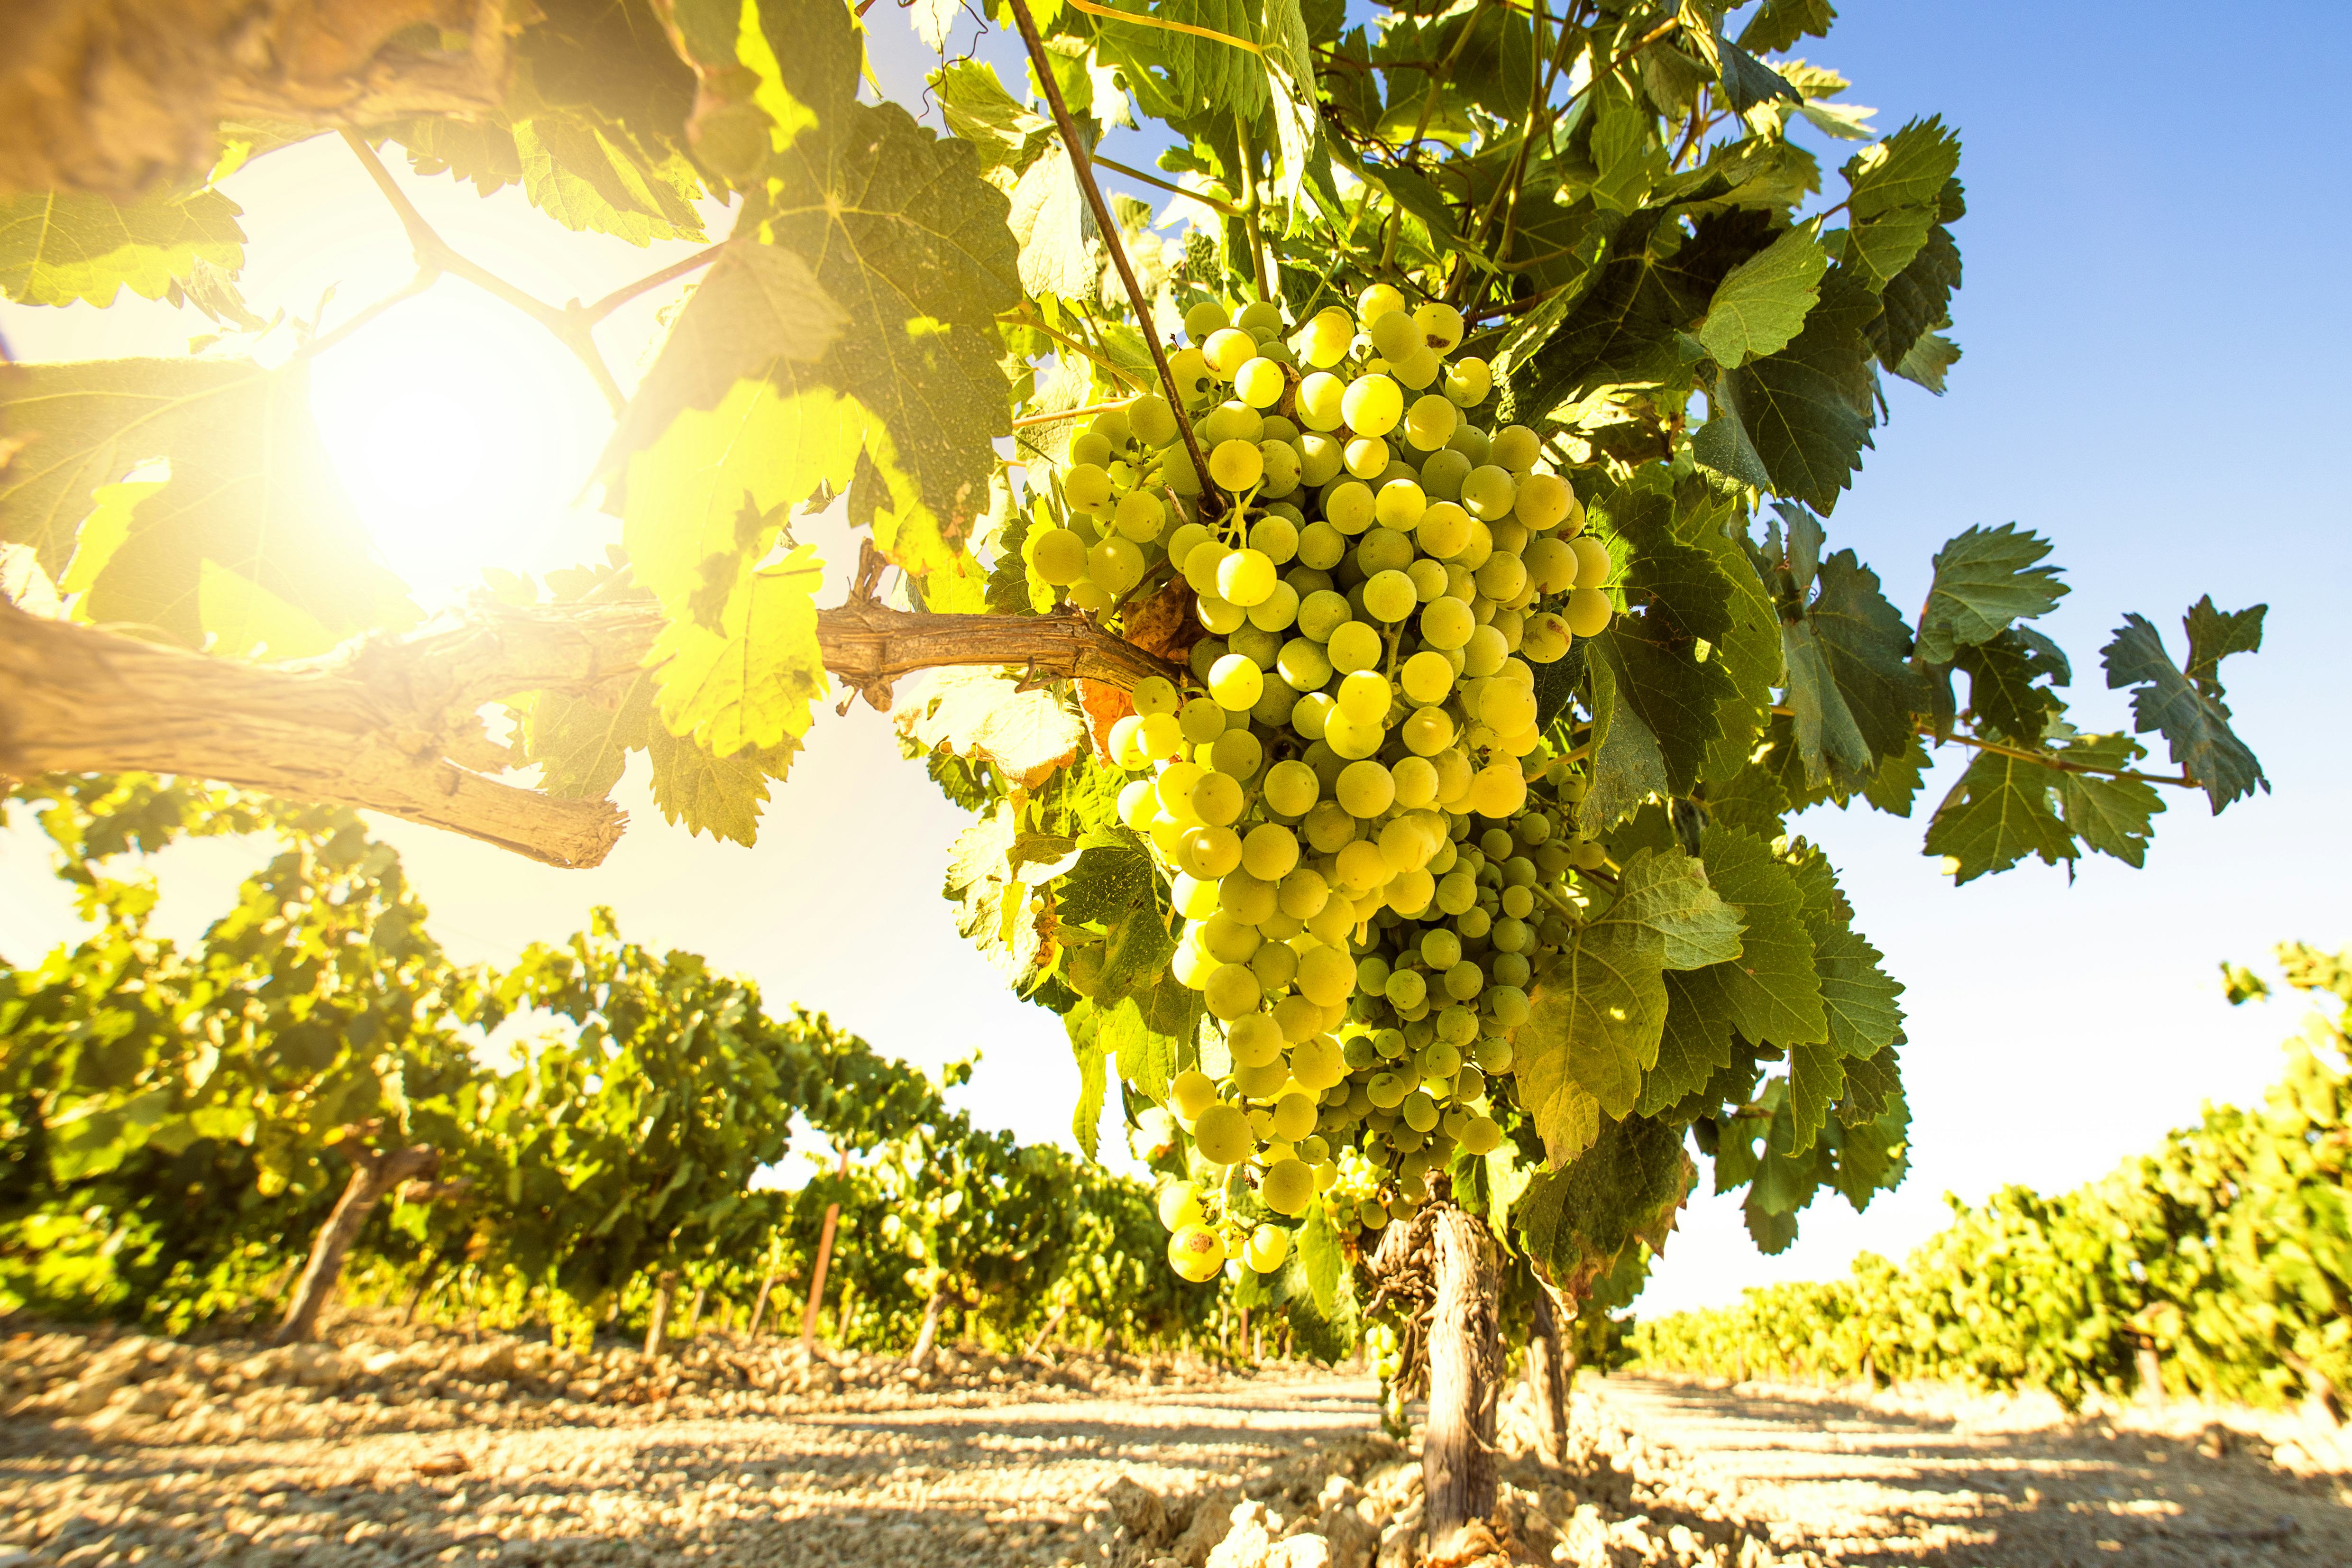 Noord-Brabant steeds belangrijker voor wijnproductie